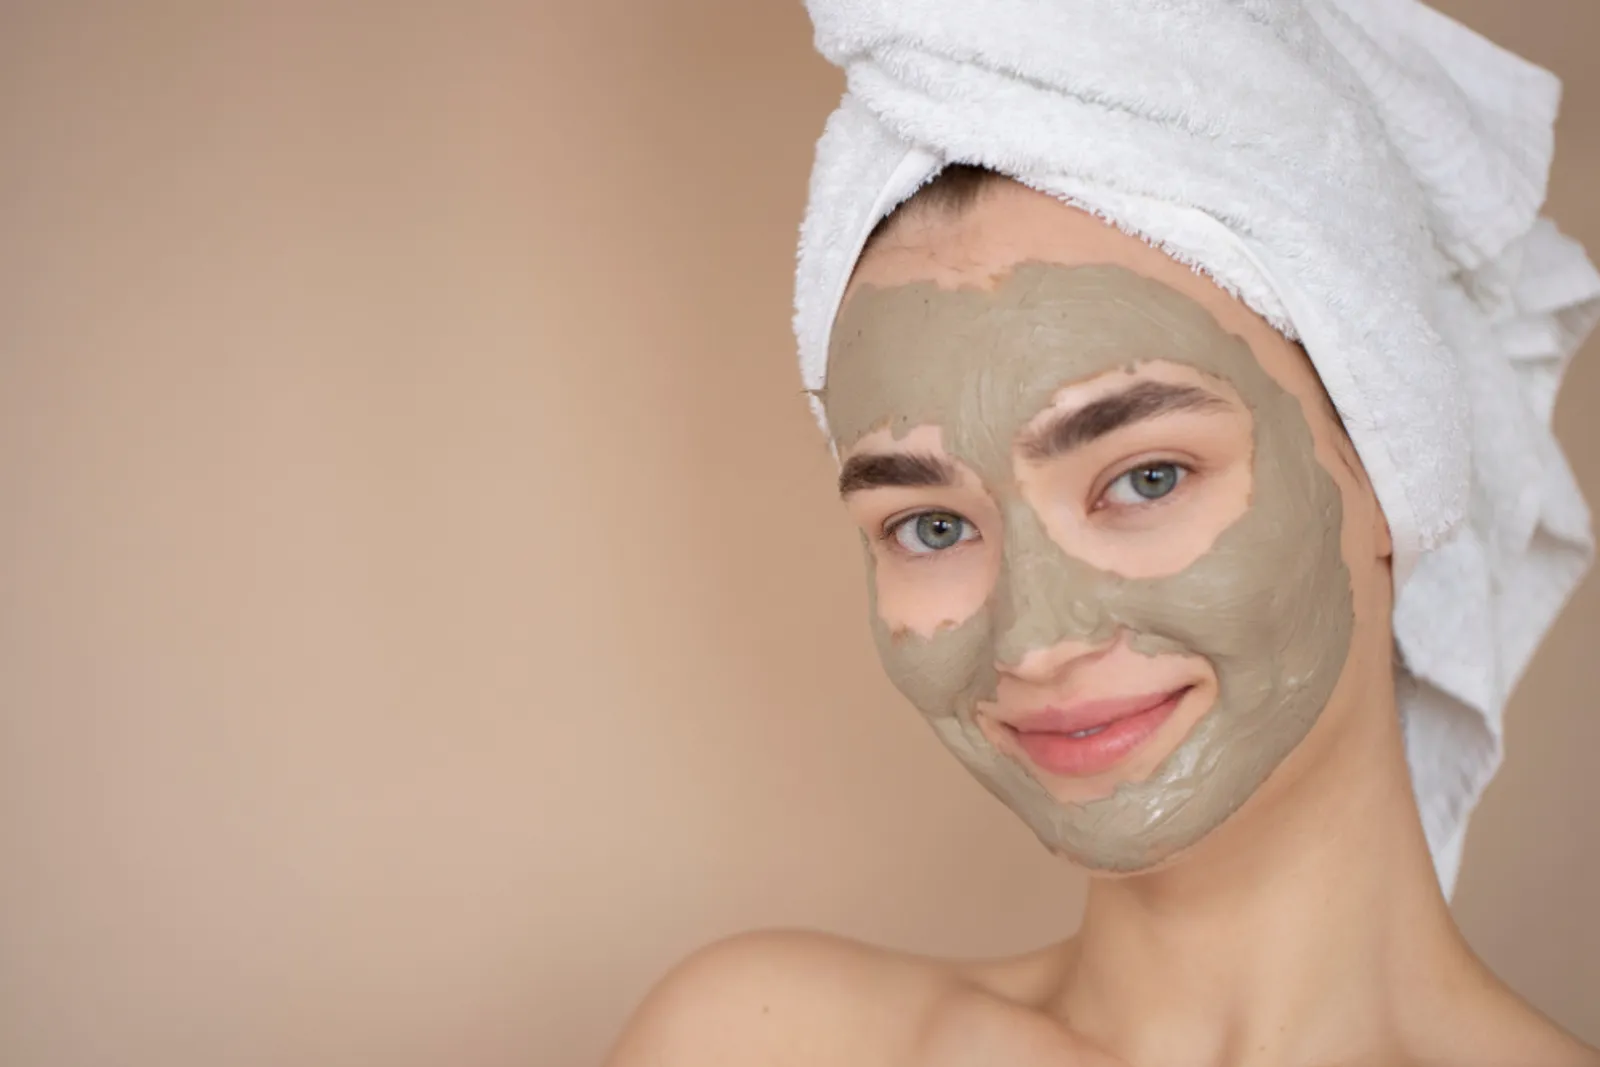 7 Manfaat Azrina Pure Charcoal Mud Mask dan Cara Pemakaiannya